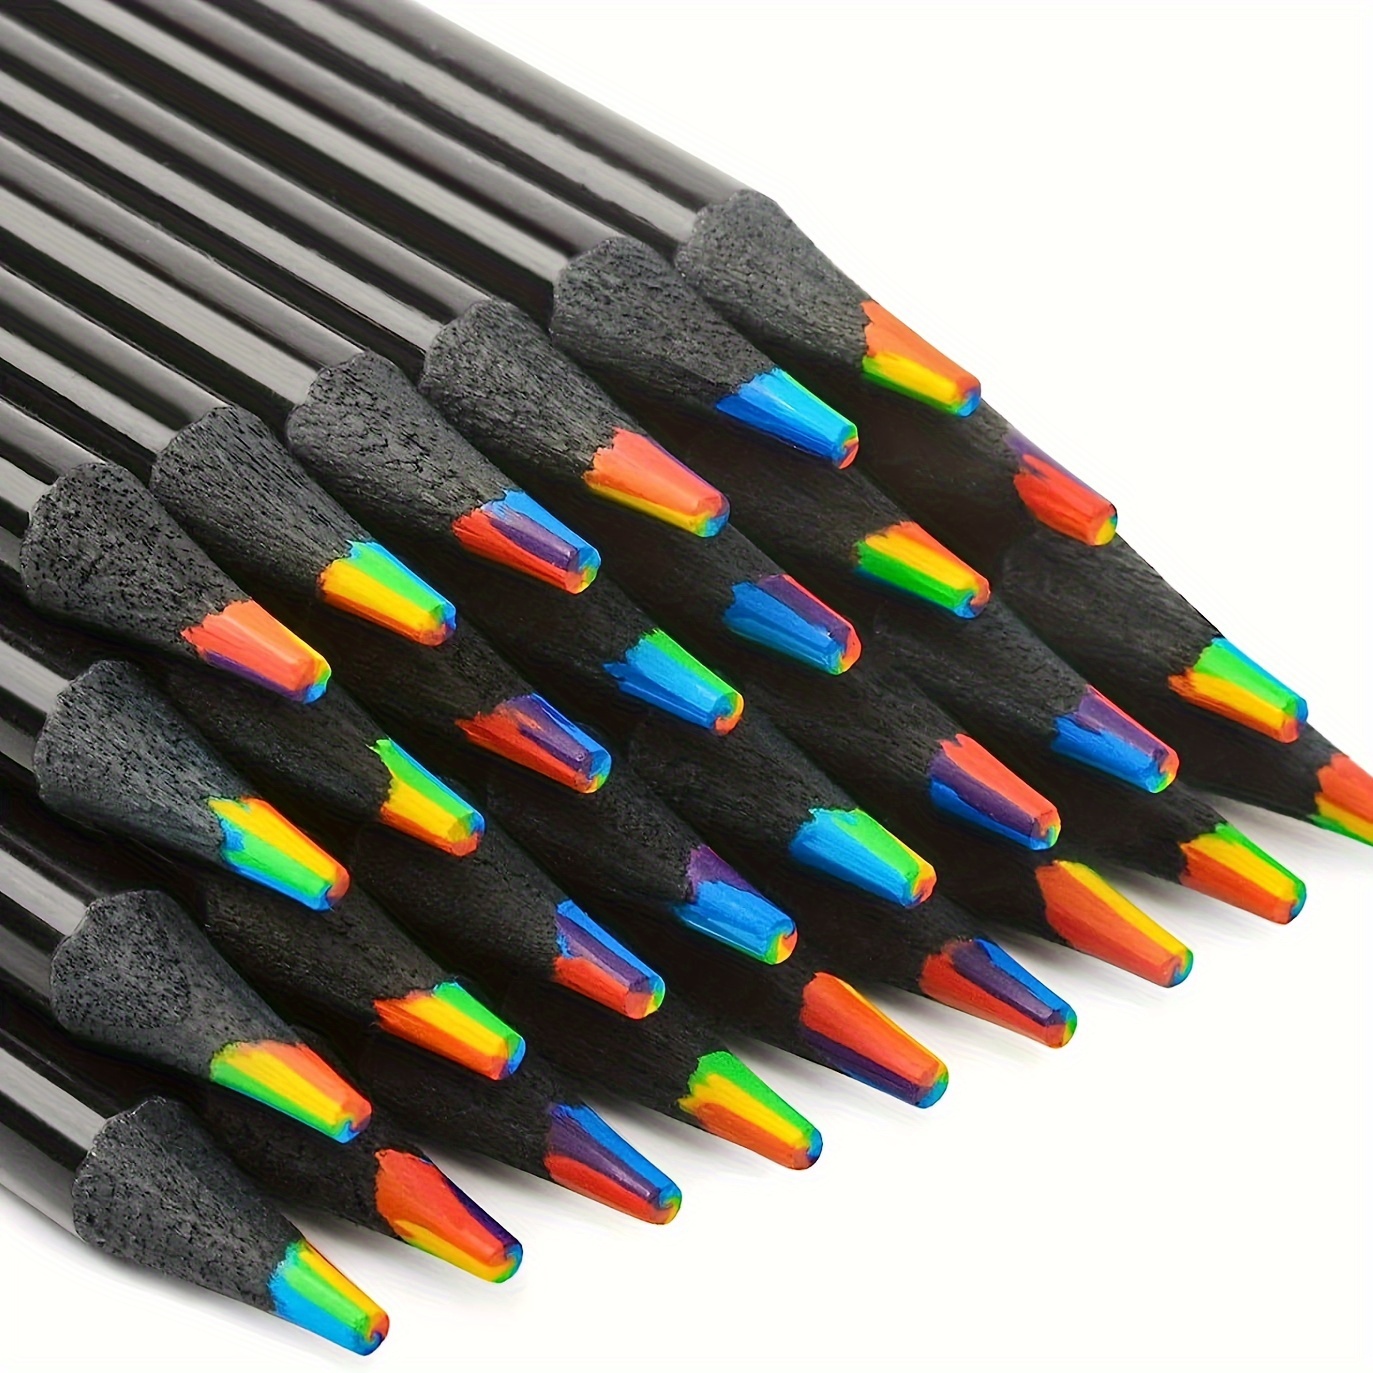 Rainbow Pencils / Natural Wood Pencils / Rainbow Pencils / Cute